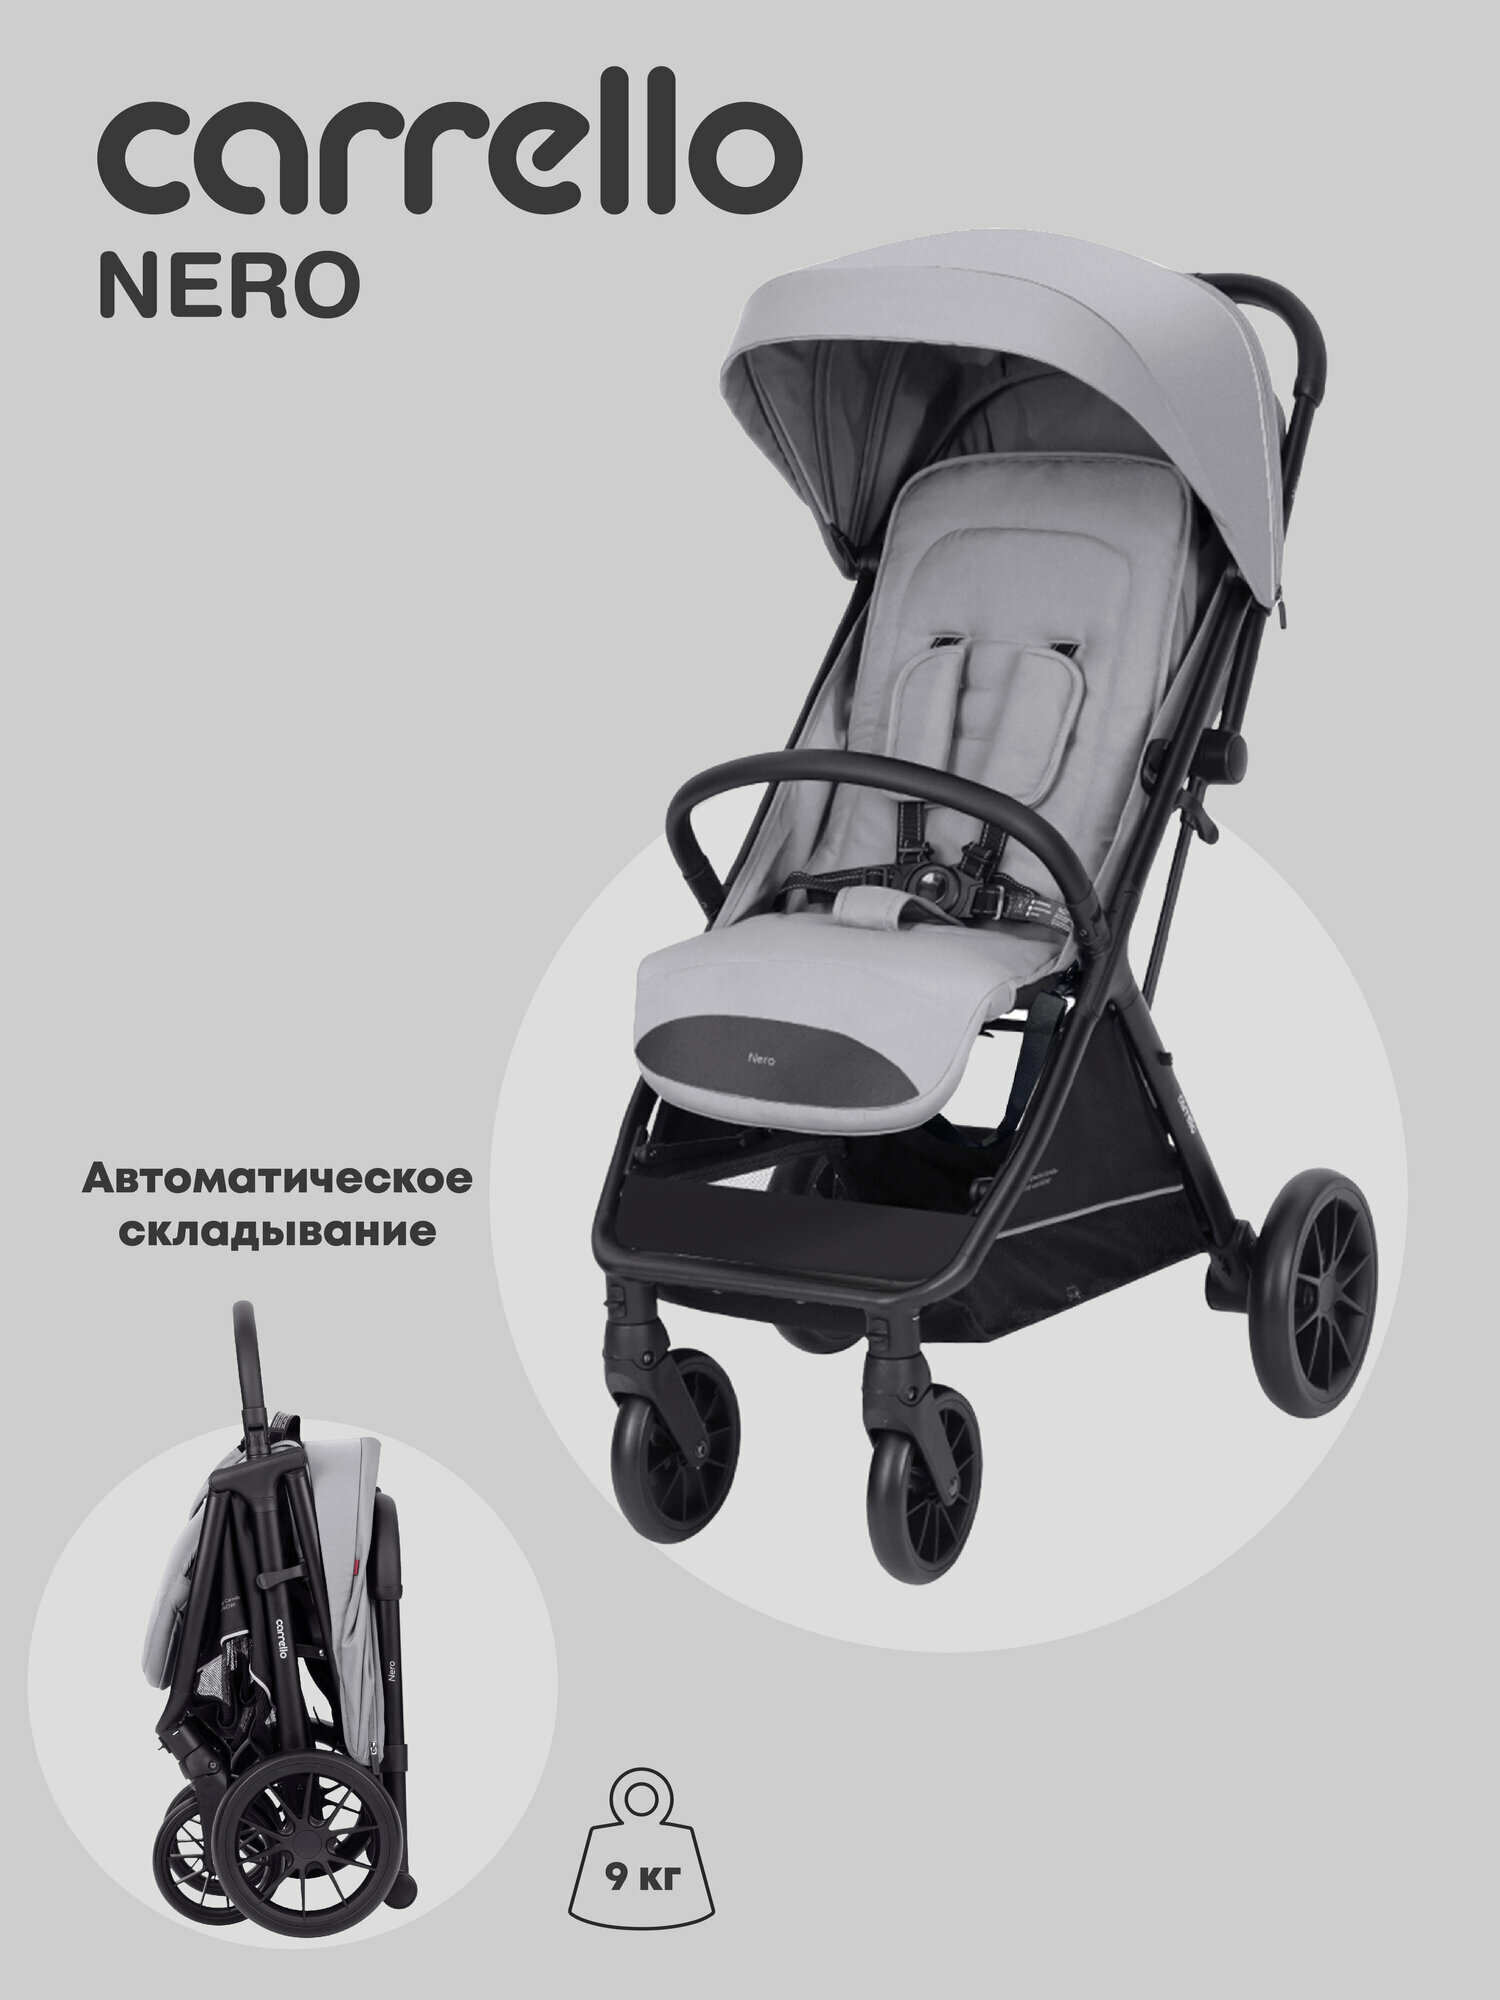 Прогулочная коляска Carrello Nero CRL-5514 Dove Grey c автоматической системой складывания